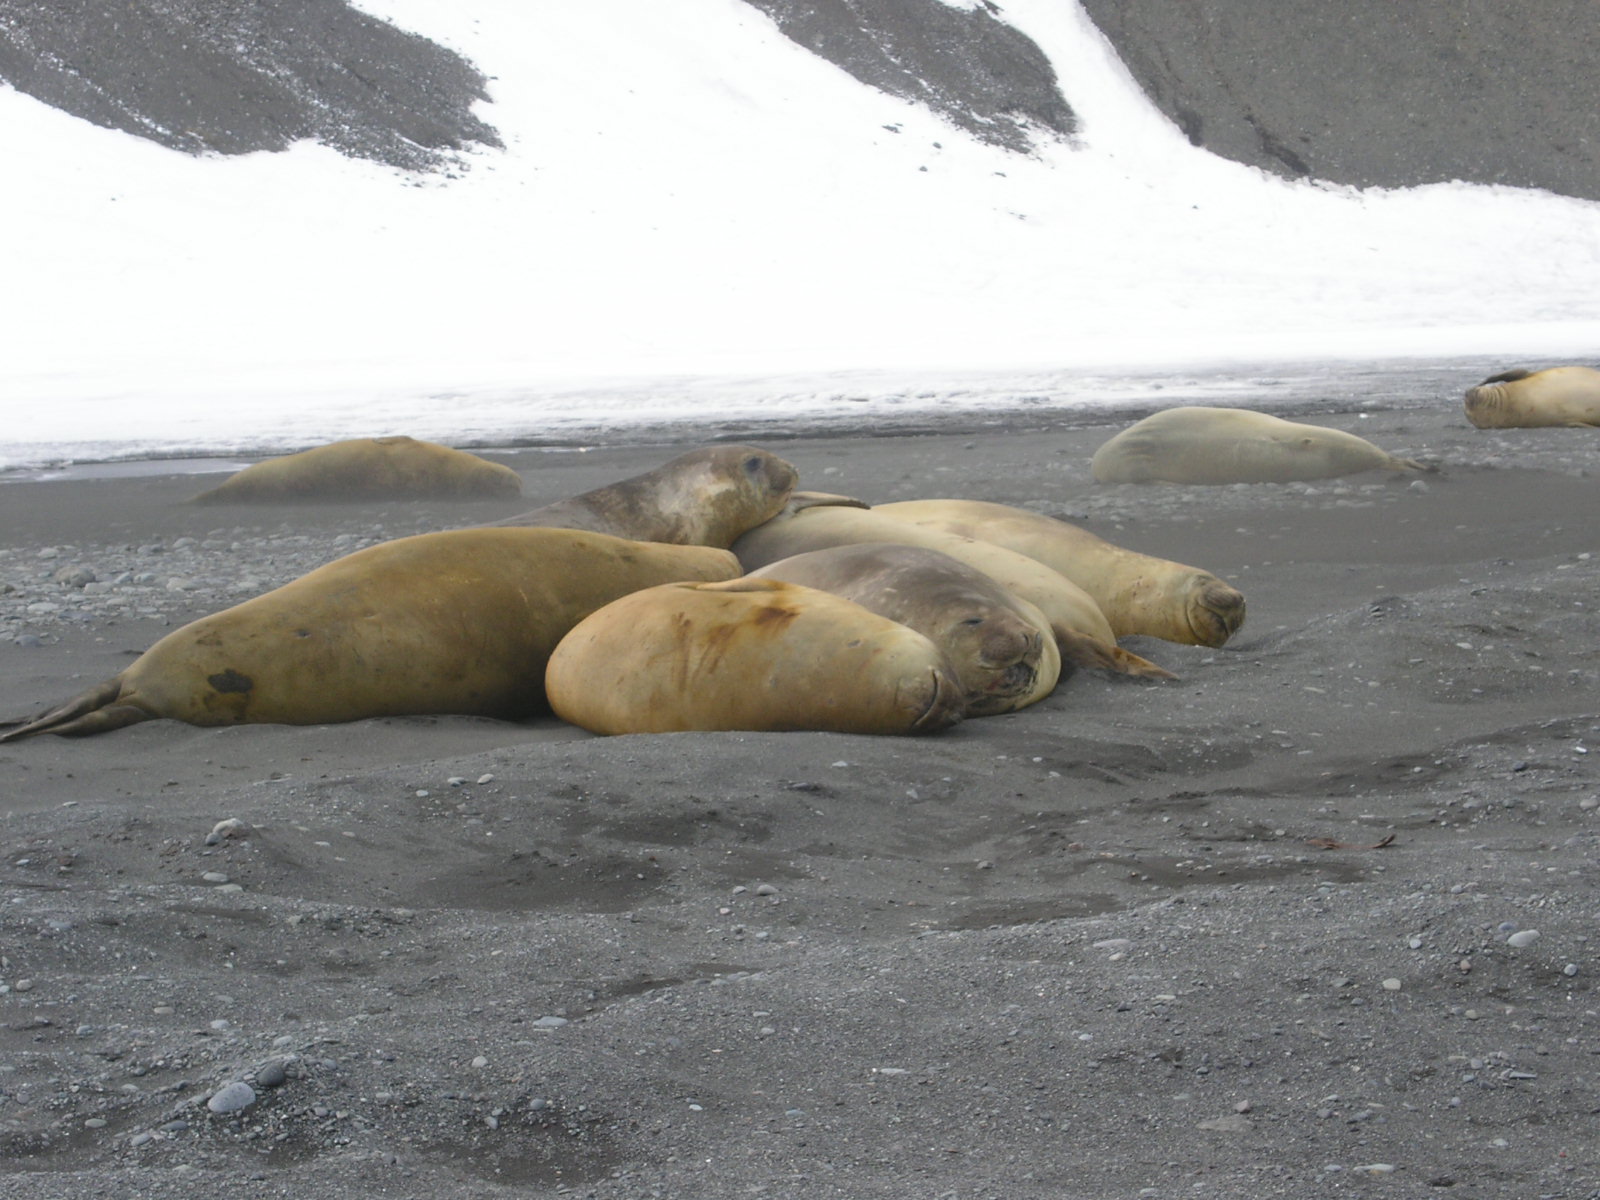 La grippe aviaire provoque des décès massifs parmi les populations de phoques à fourrure et d’éléphants de mer près de l’Antarctique